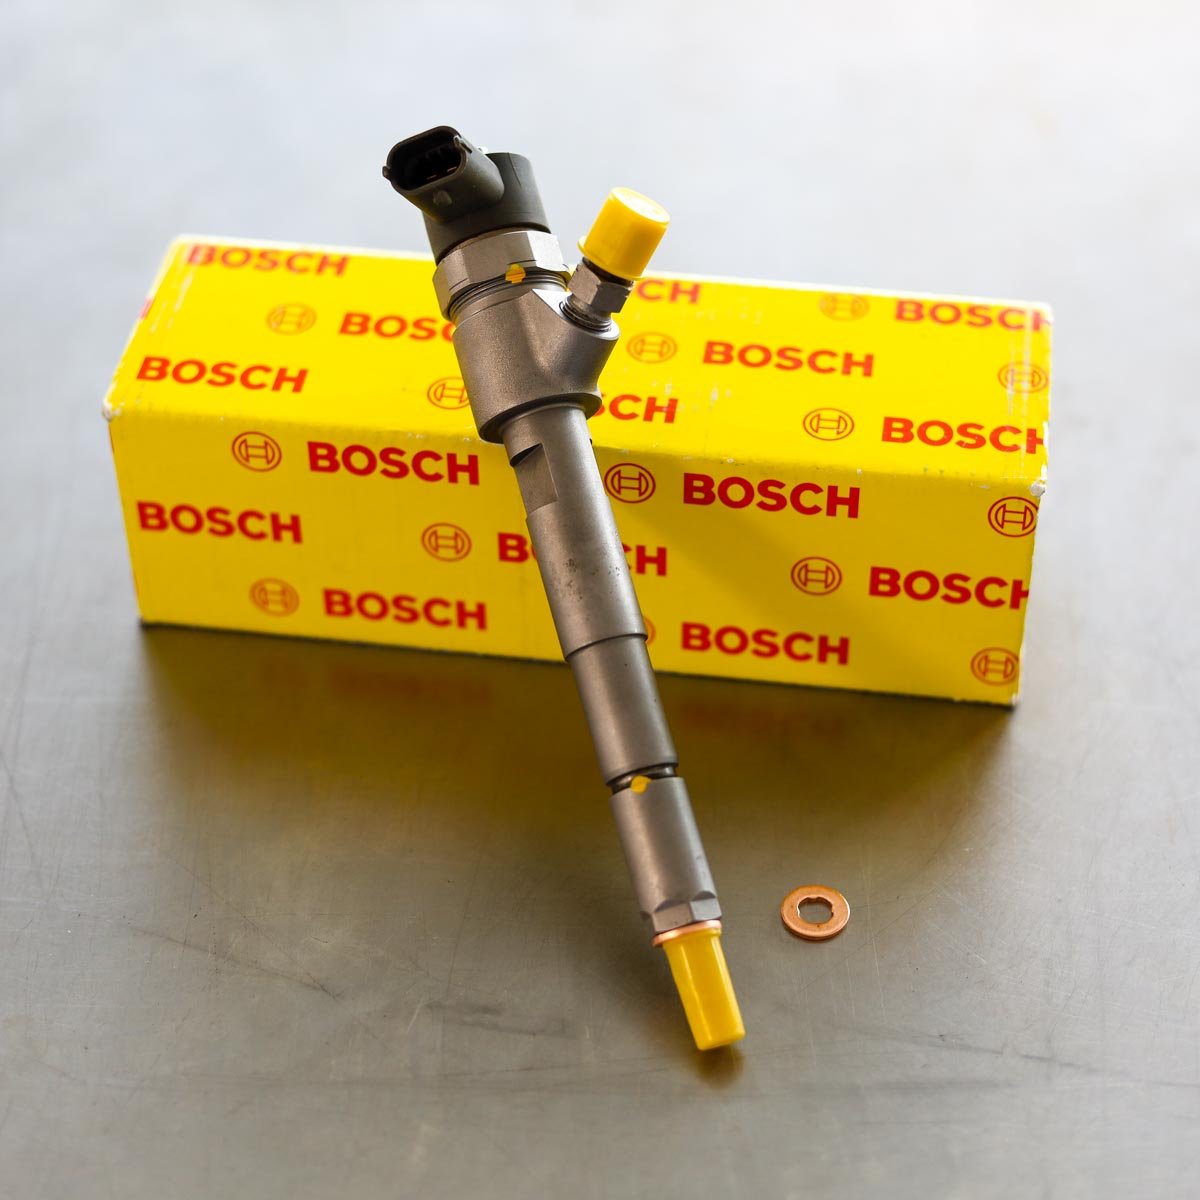 Wtryskiwacz Bosch po naprawie gotowy do wysłania do kupującego na gwarancji na okres 24 miesięcy - niska cena